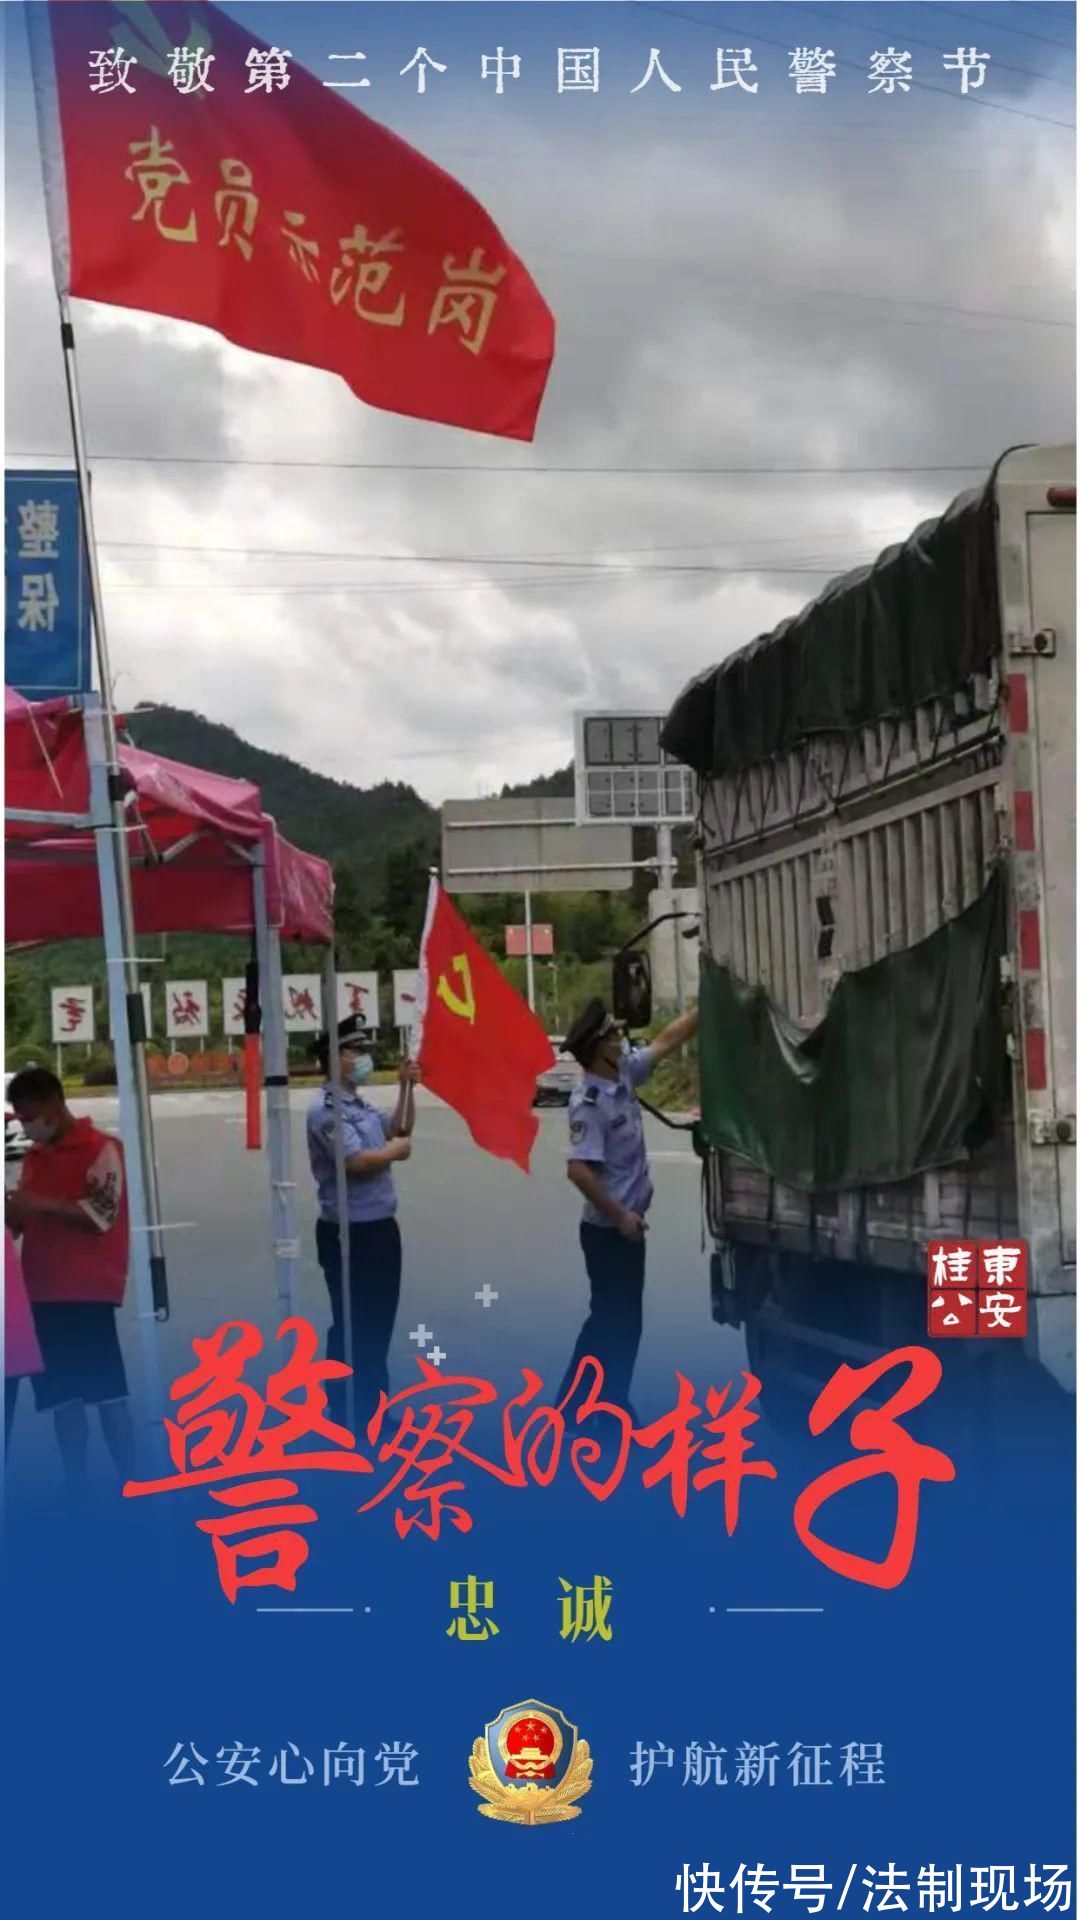 中国人民警察节|「致敬第二个中国人民警察节」人民警察的样子